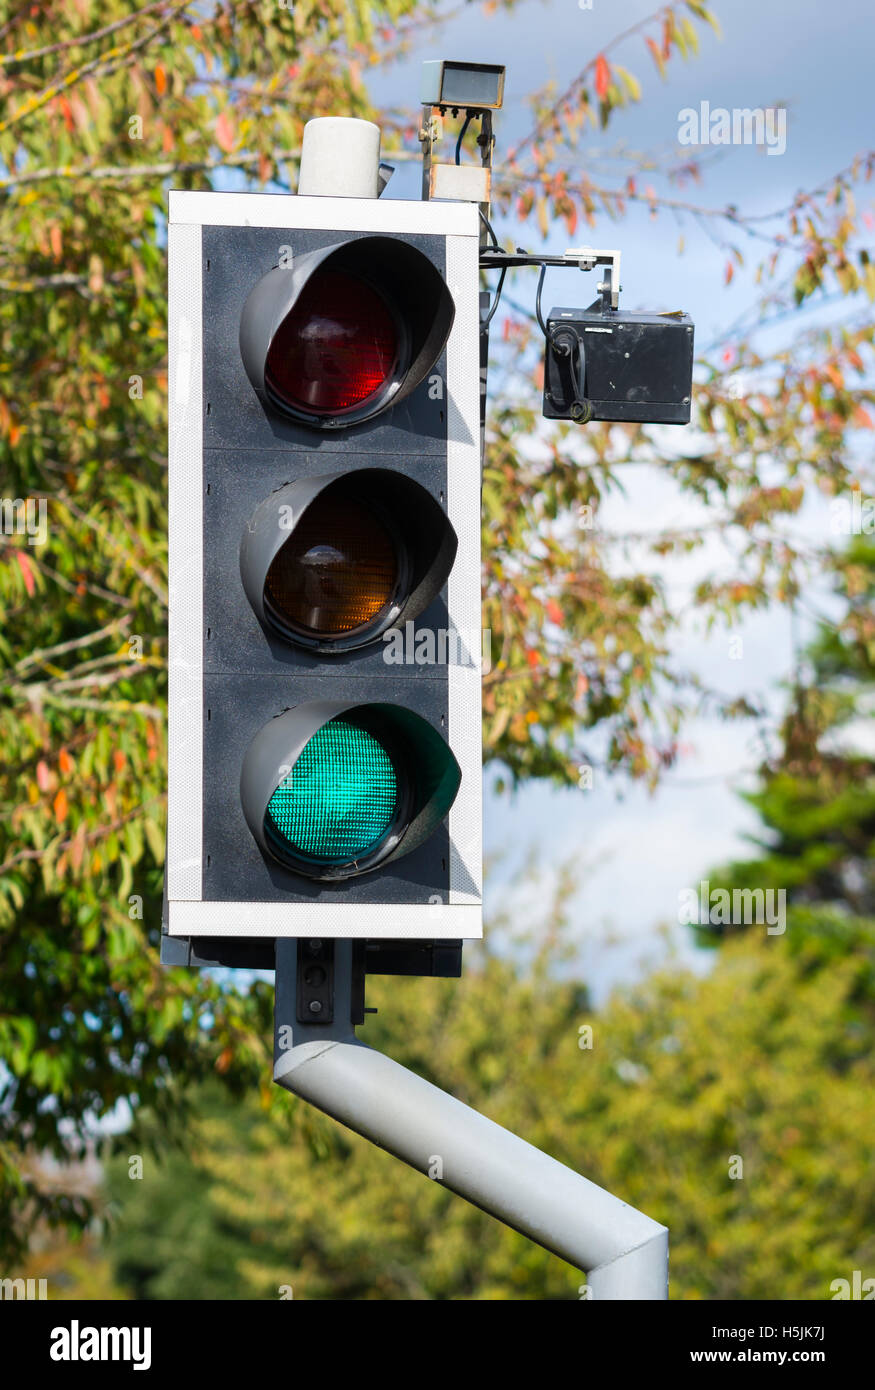 Ampel mit Kamera an einem Fußgängerüberweg im Vereinigten Königreich  Stockfotografie - Alamy